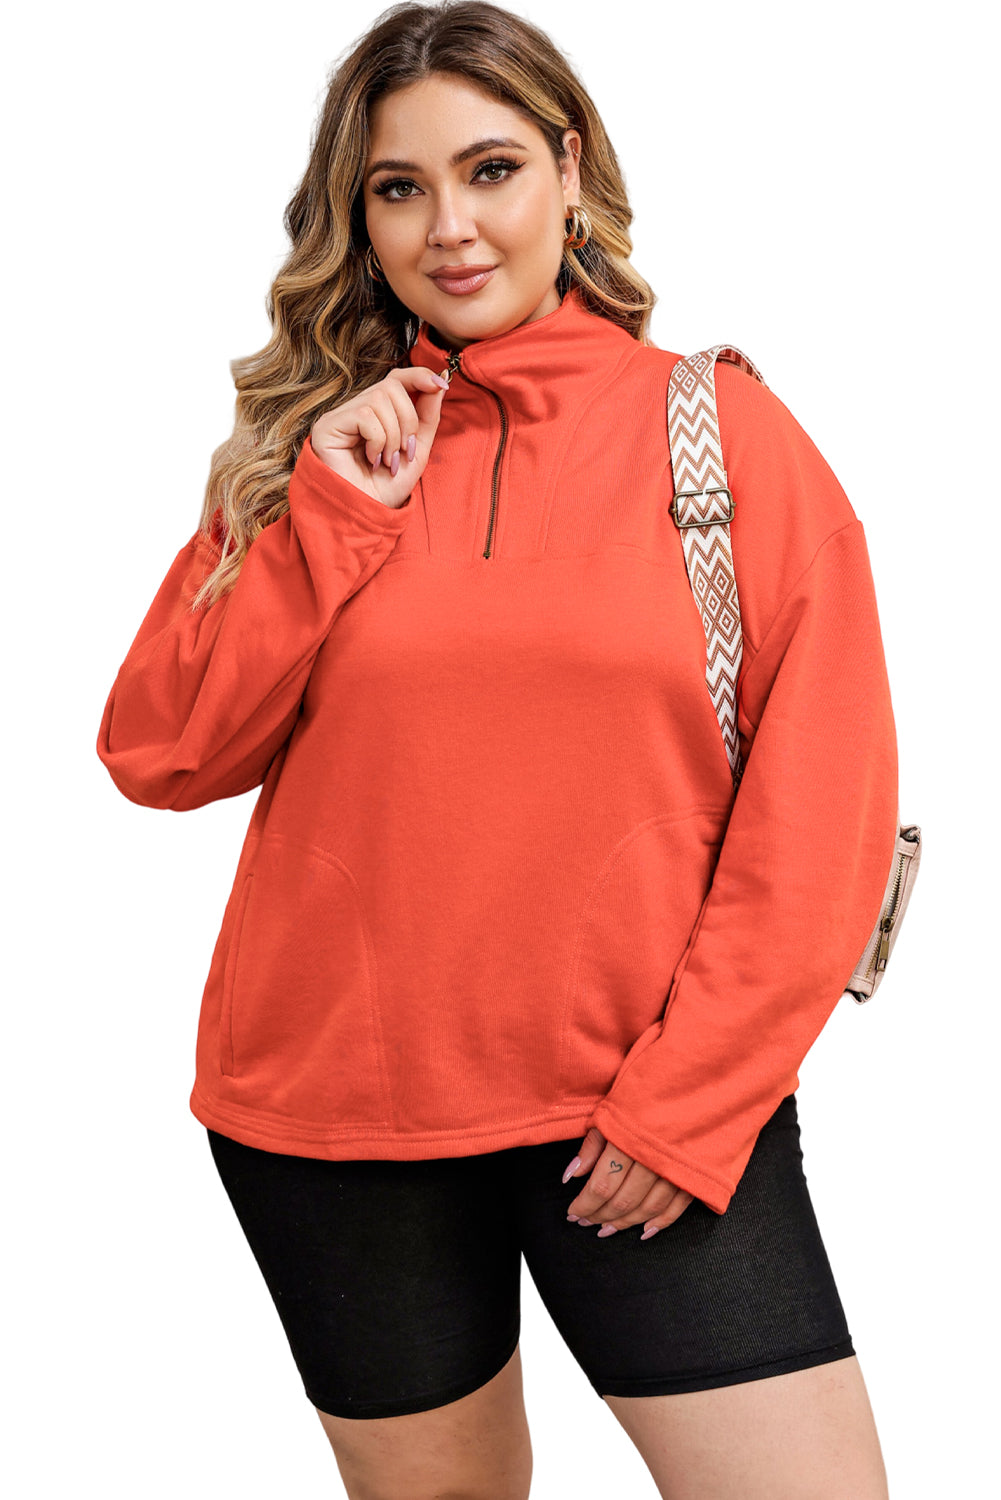 Sweat-shirt orange avec poche et fermeture éclair avec joint torique, grande taille